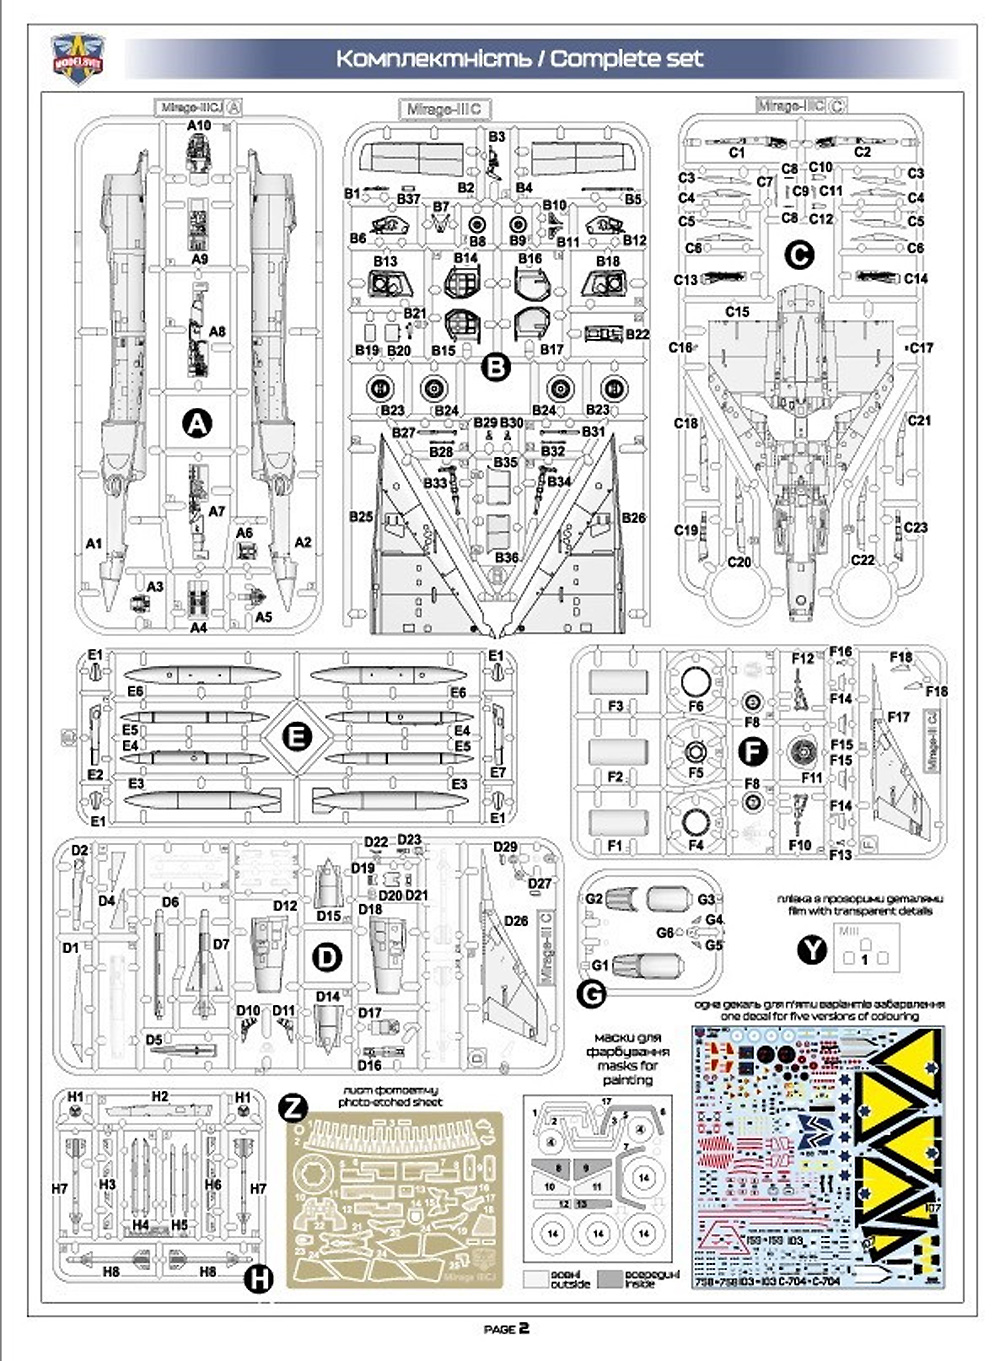 ミラージュ 3CJ 戦闘機 プラモデル (モデルズビット 1/72 エアクラフト プラモデル No.72062) 商品画像_1